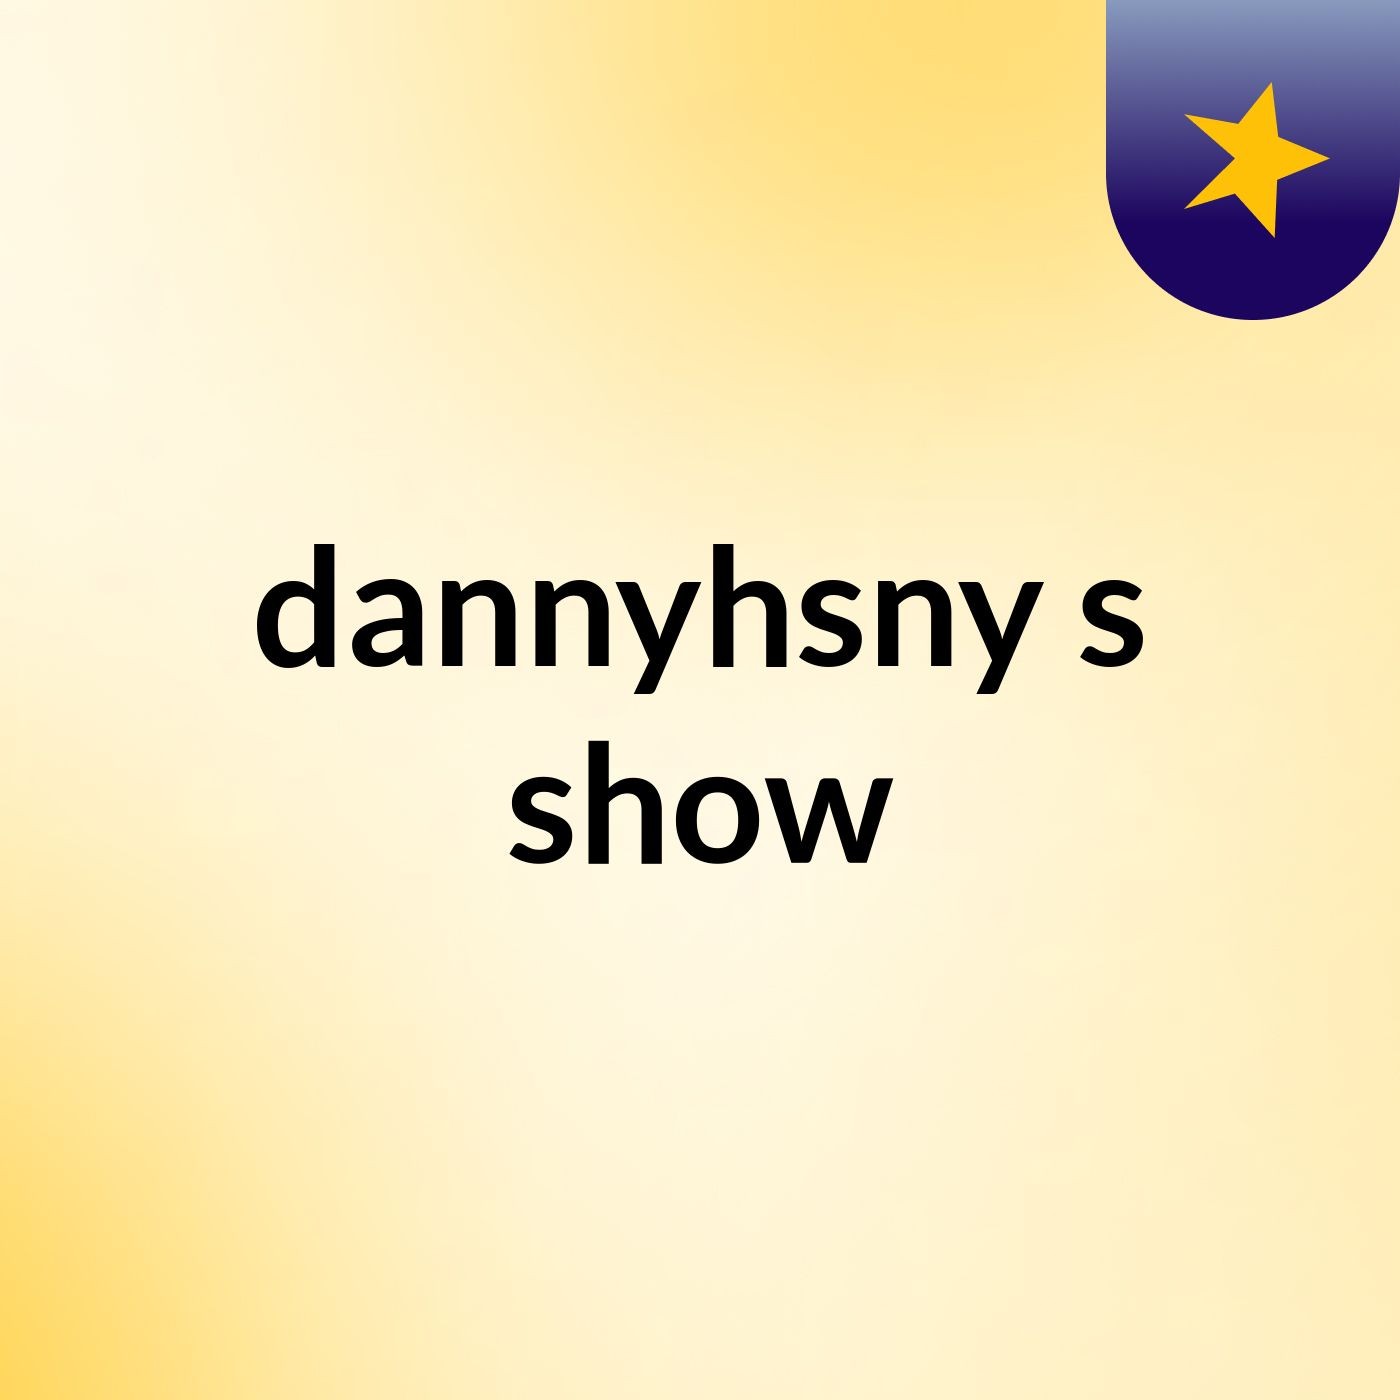 dannyhsny's show